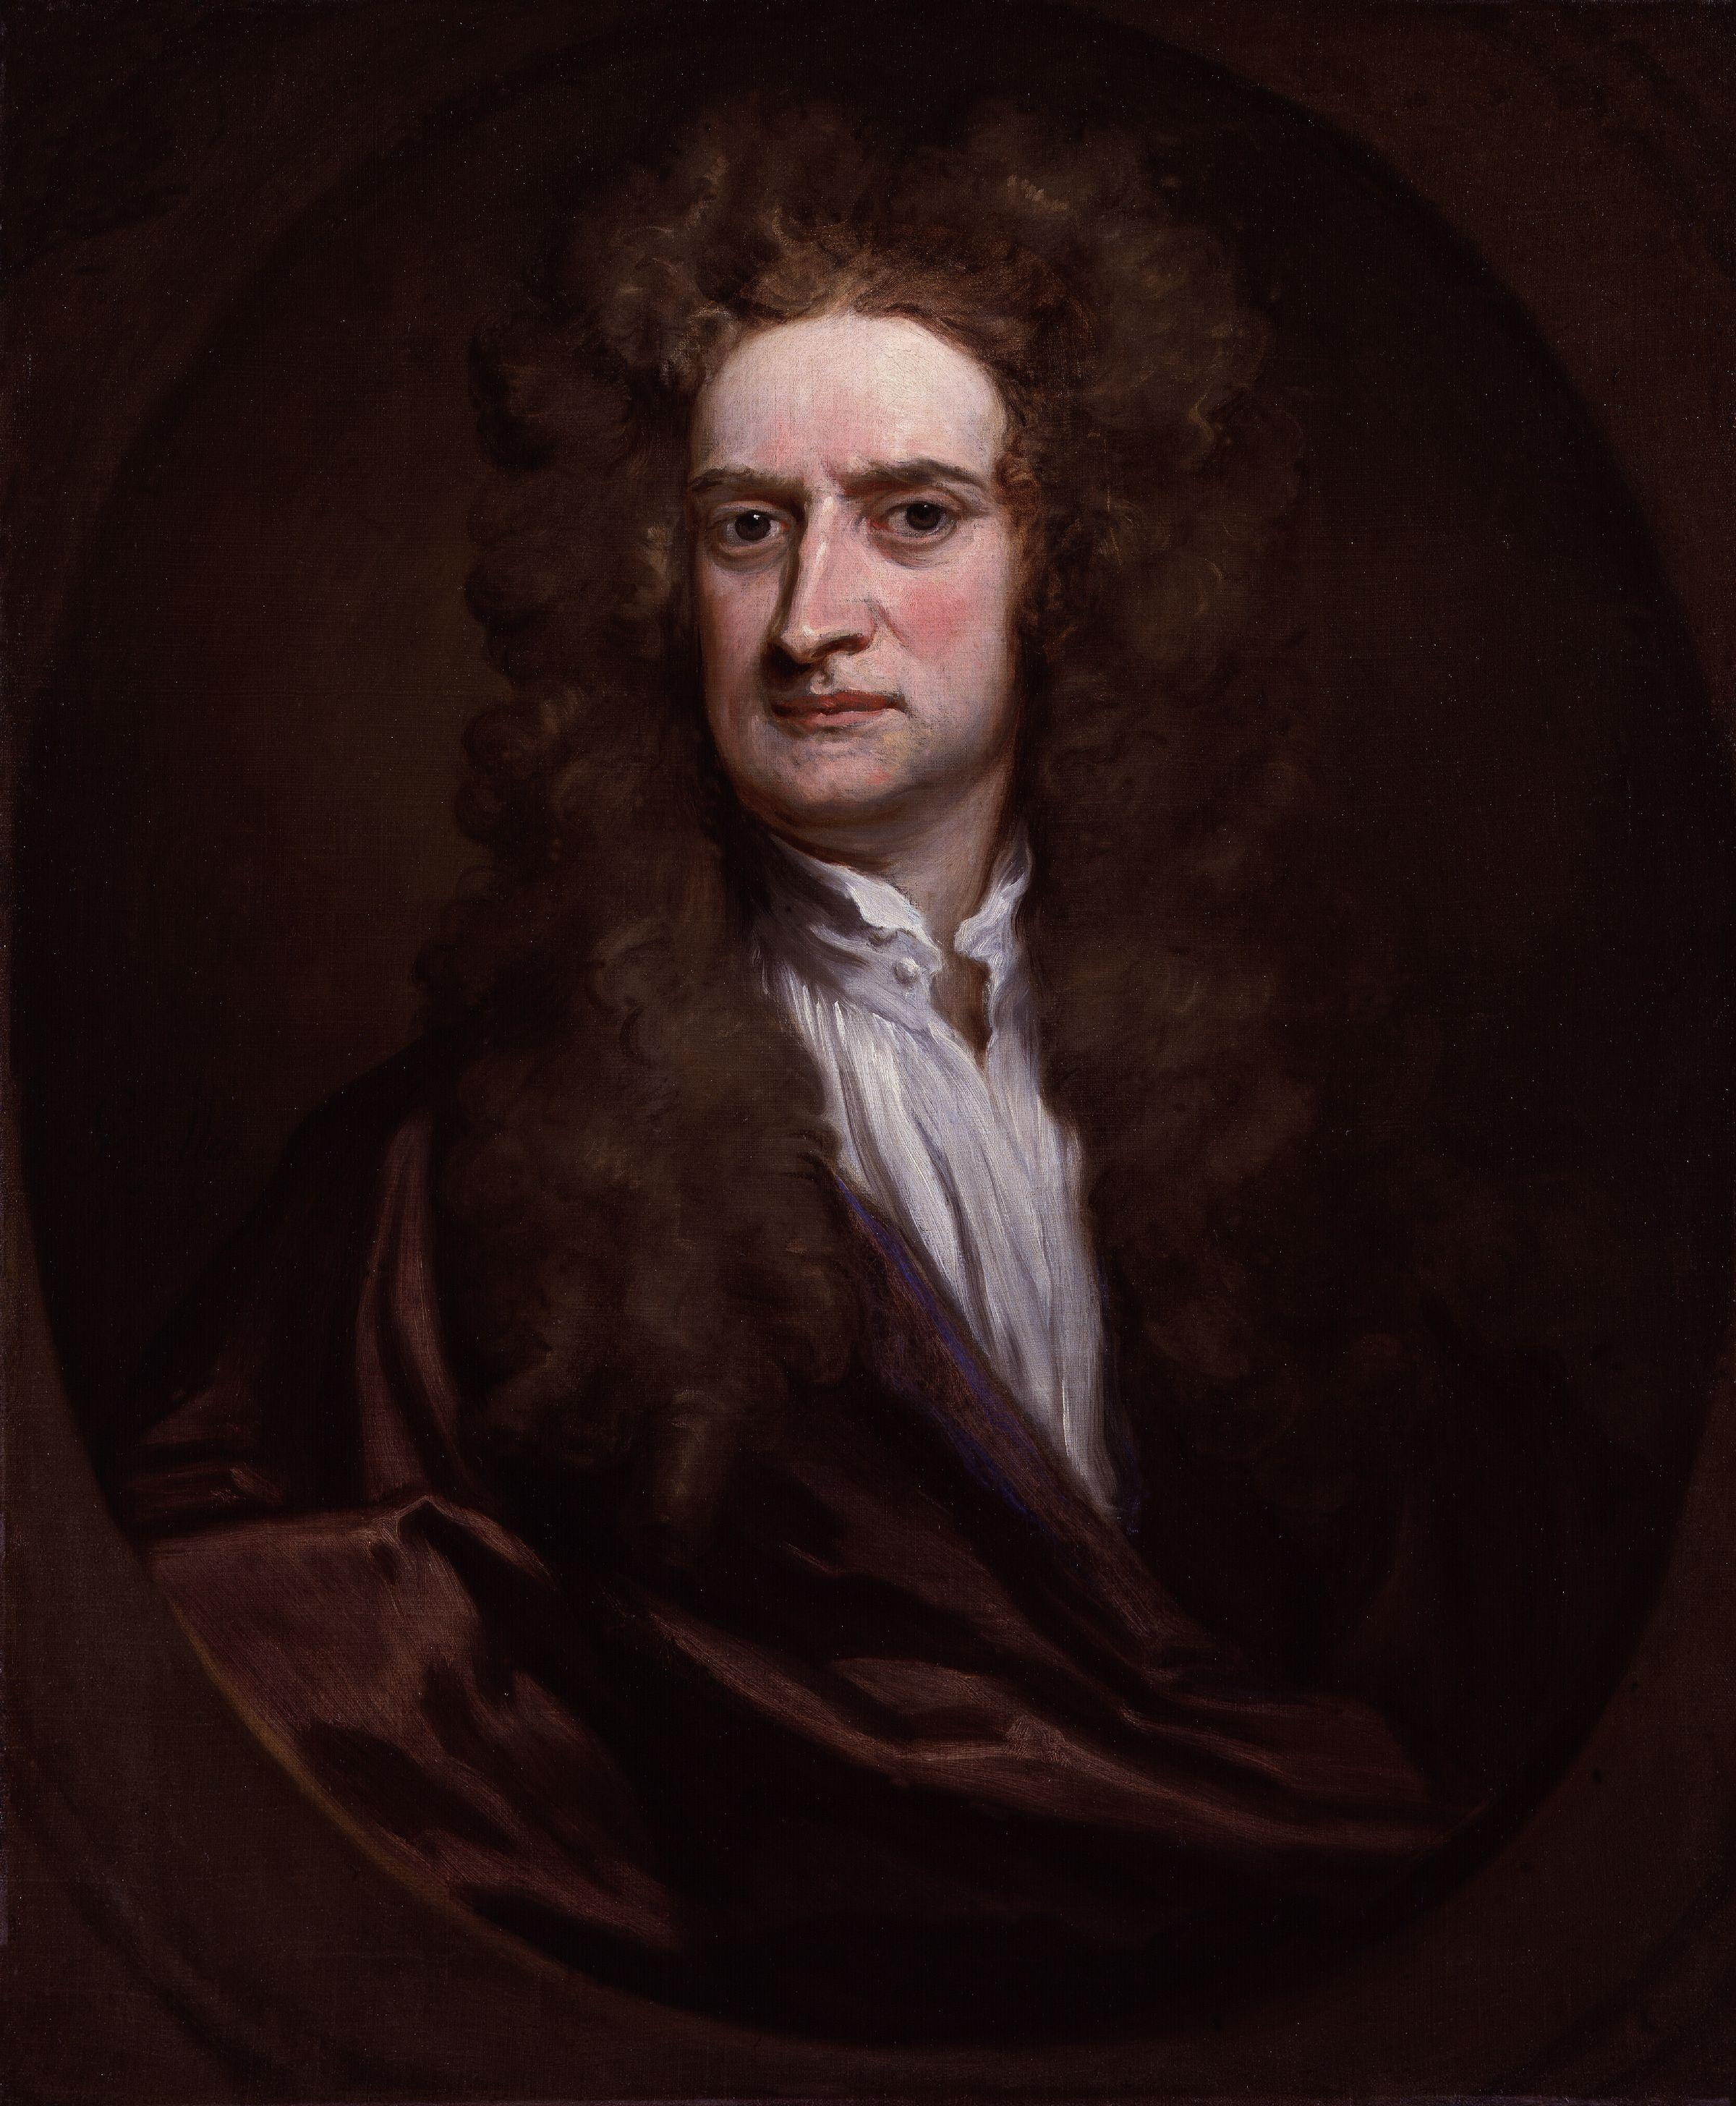 Сэр Исаак Ньютон (1642-1727)